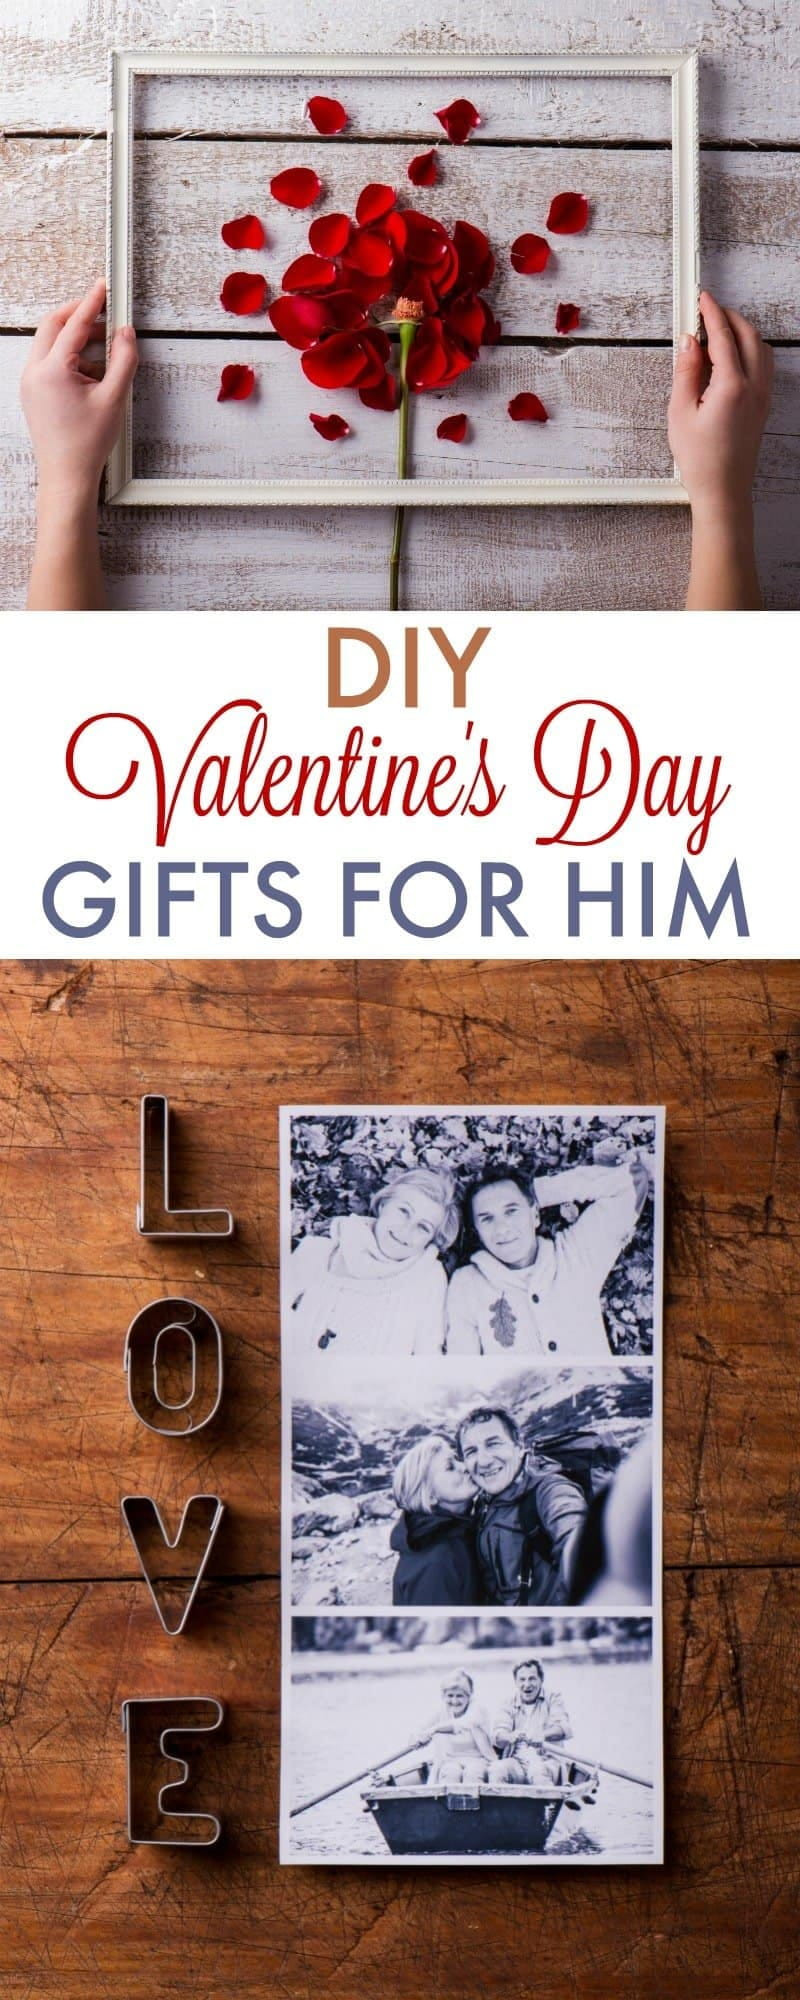 Good Gift Ideas For Your Boyfriend
 DIY Valentine s Day Gifts for Boyfriend 730 Sage Street